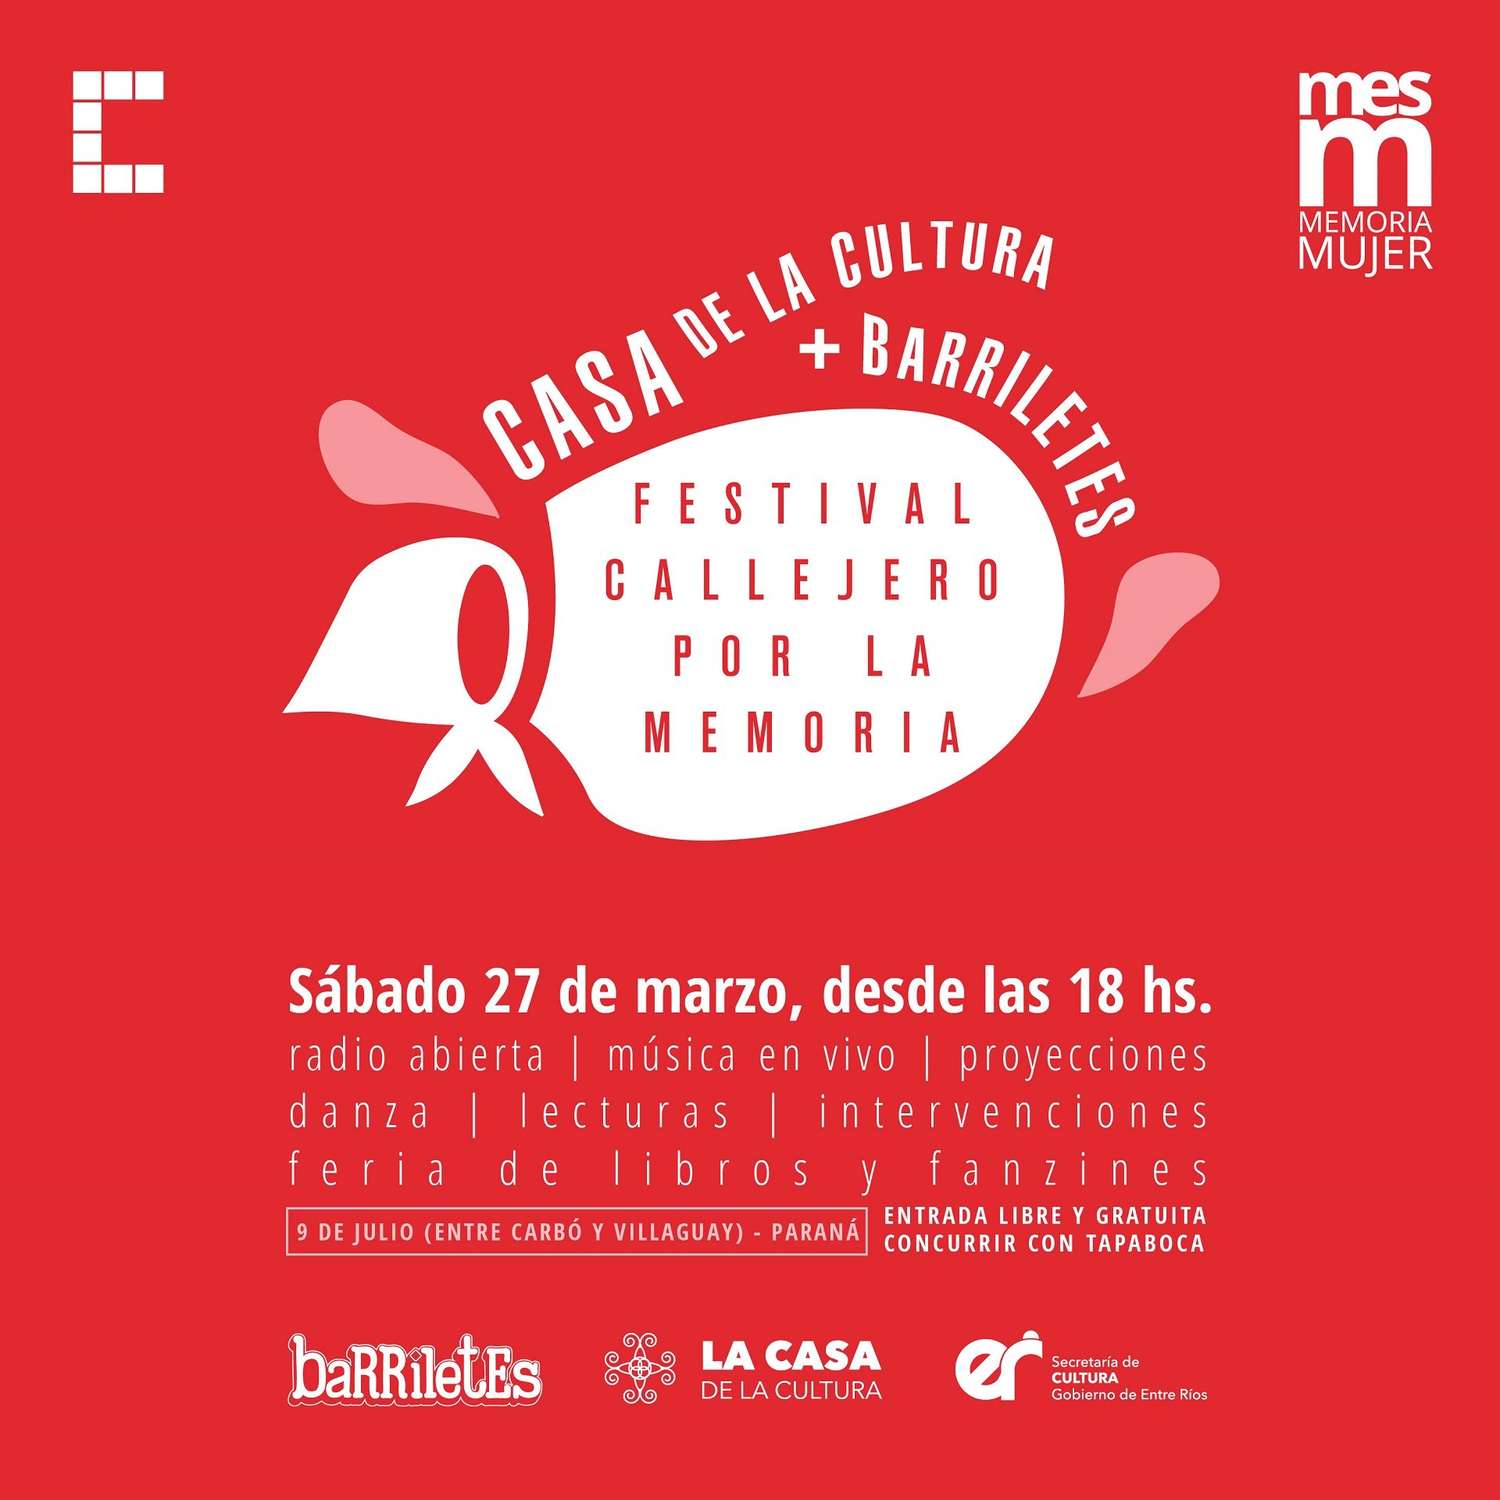 Realizarán un Festival Callejero por la Memoria en Paraná